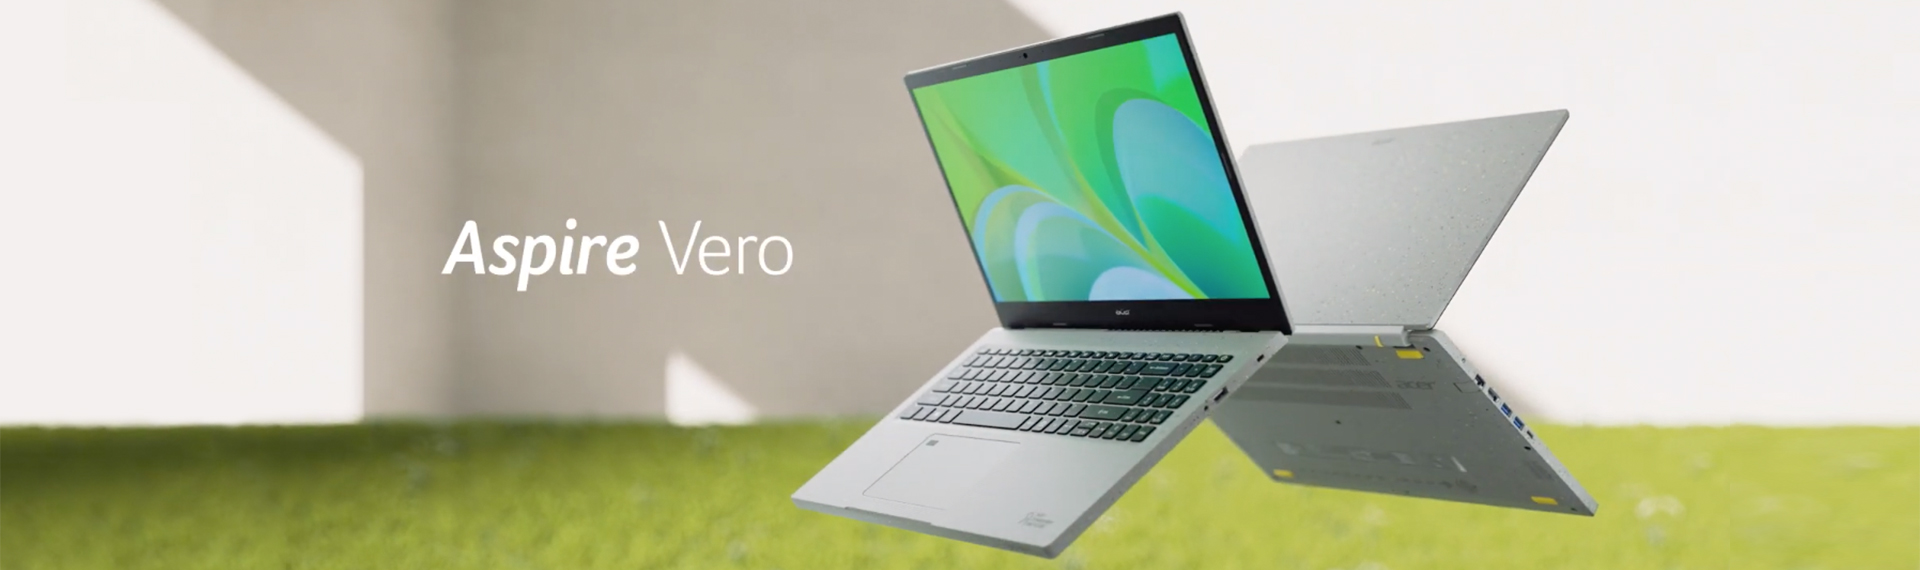 Laptop Aspire Vero, Laptop Ramah Lingkungan Didukung Platform Earthion